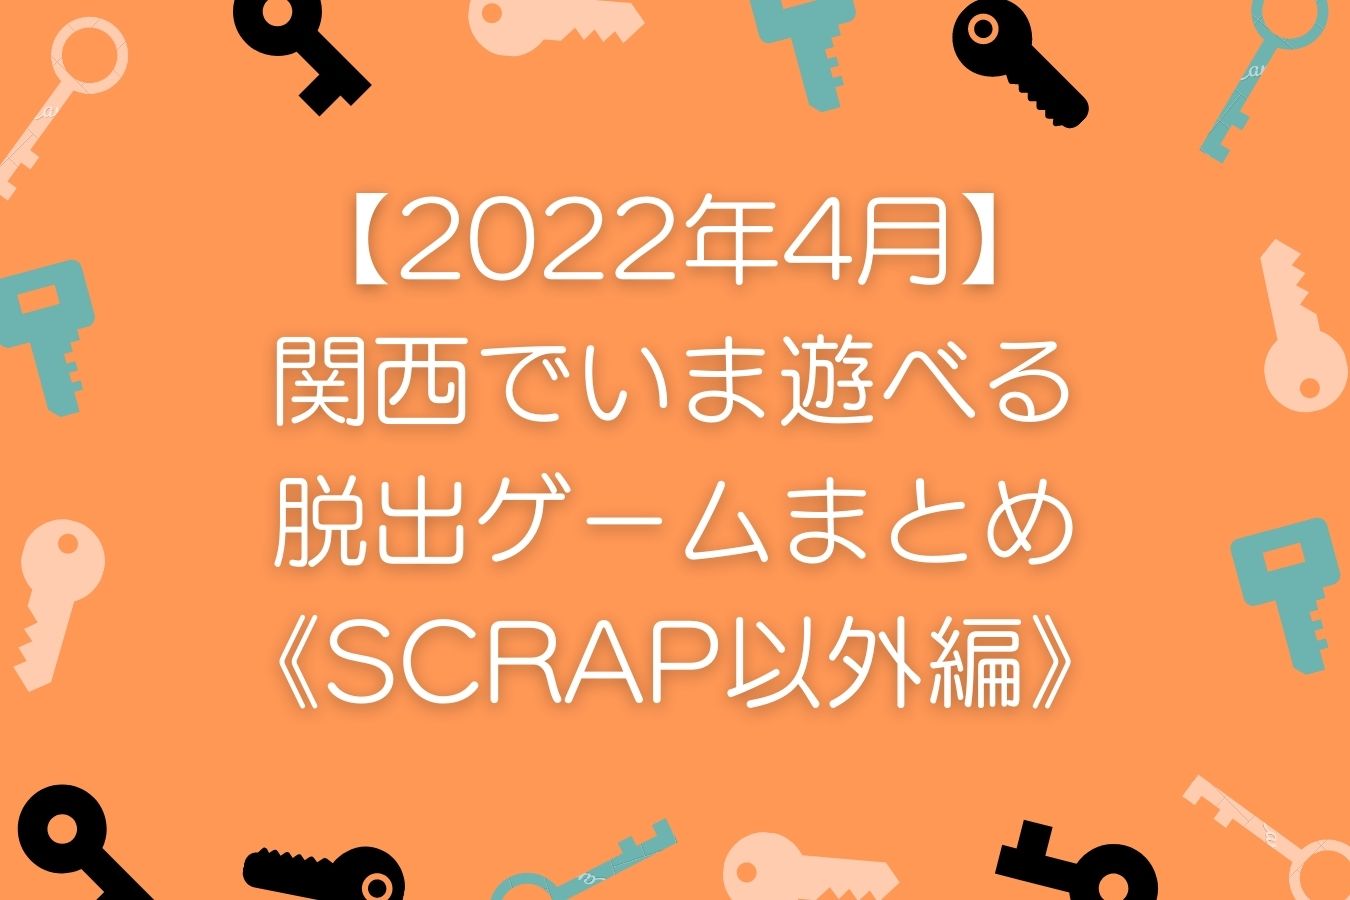 【2022年4月】関西でいま遊べる脱出ゲームまとめ《SCRAP以外編》